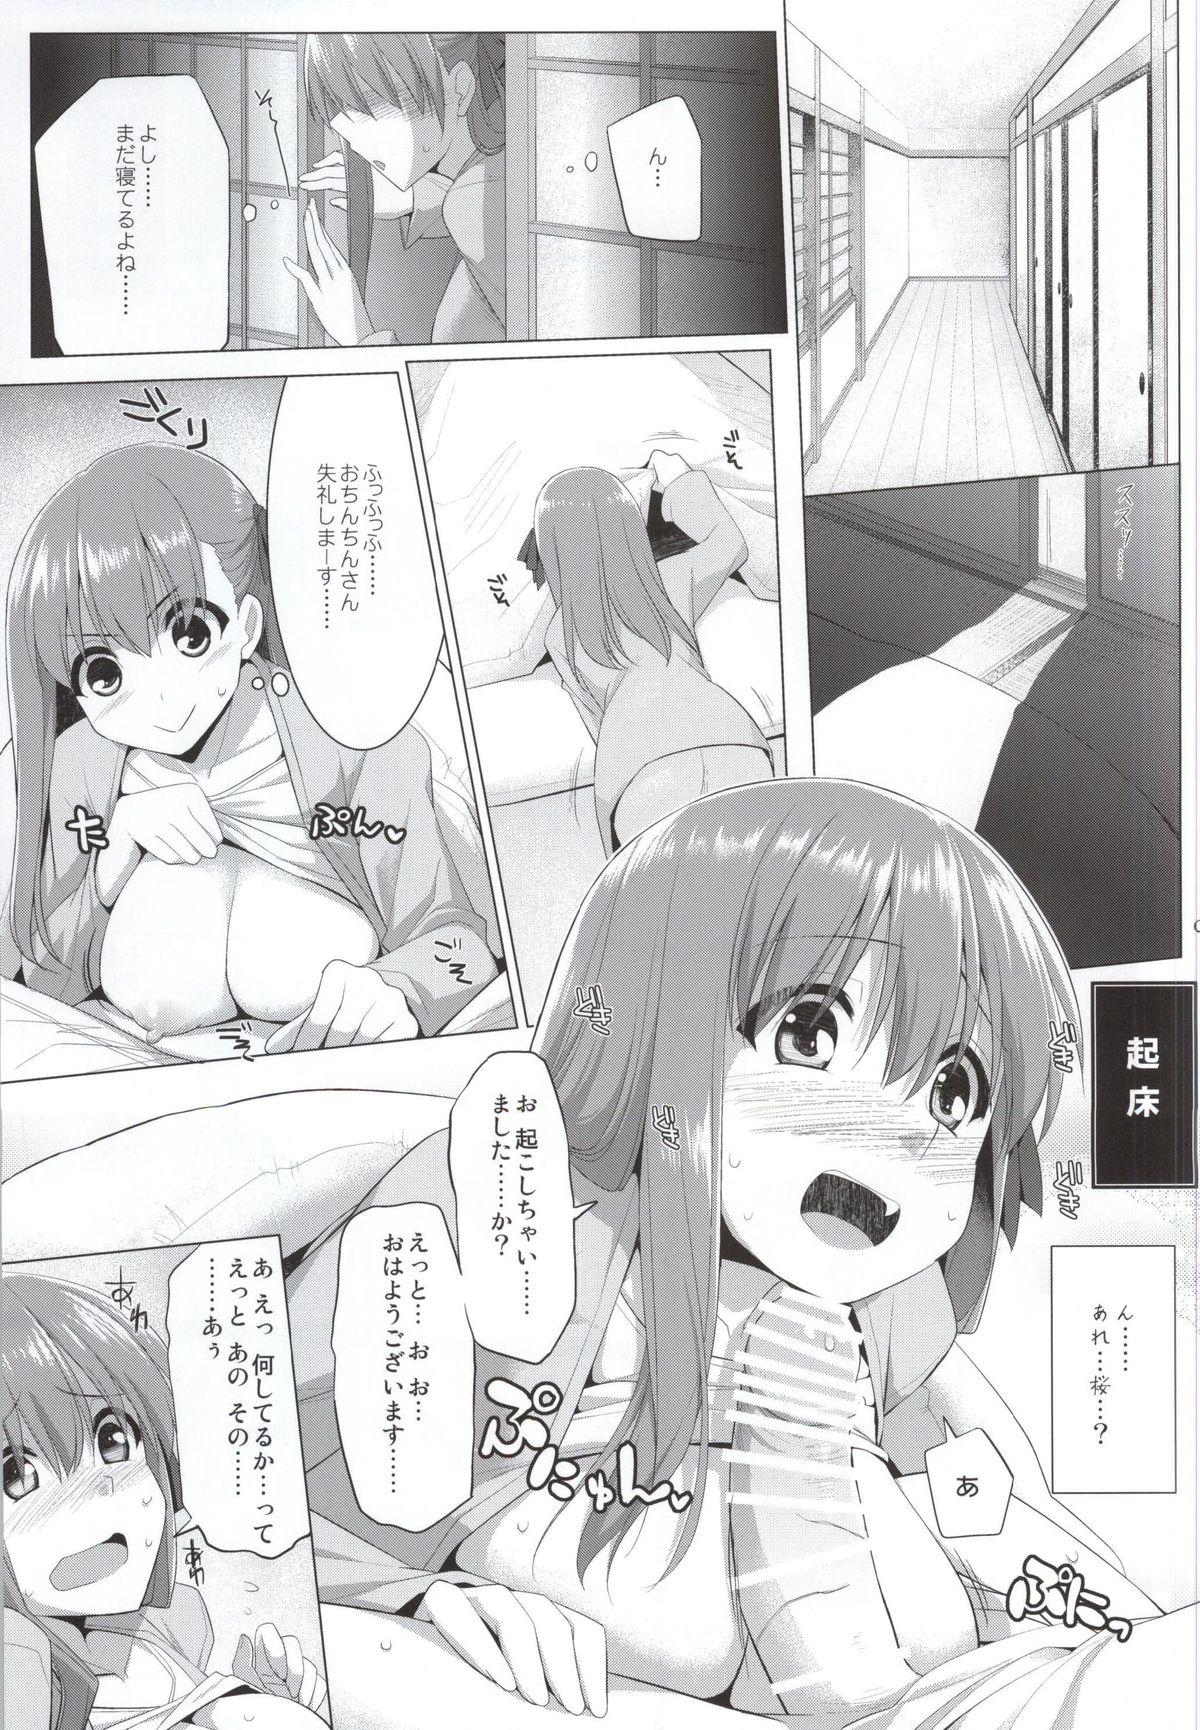 Peludo Matou Sakura no Shuujitsu Chichi Houshi - Fate stay night Porno 18 - Page 2